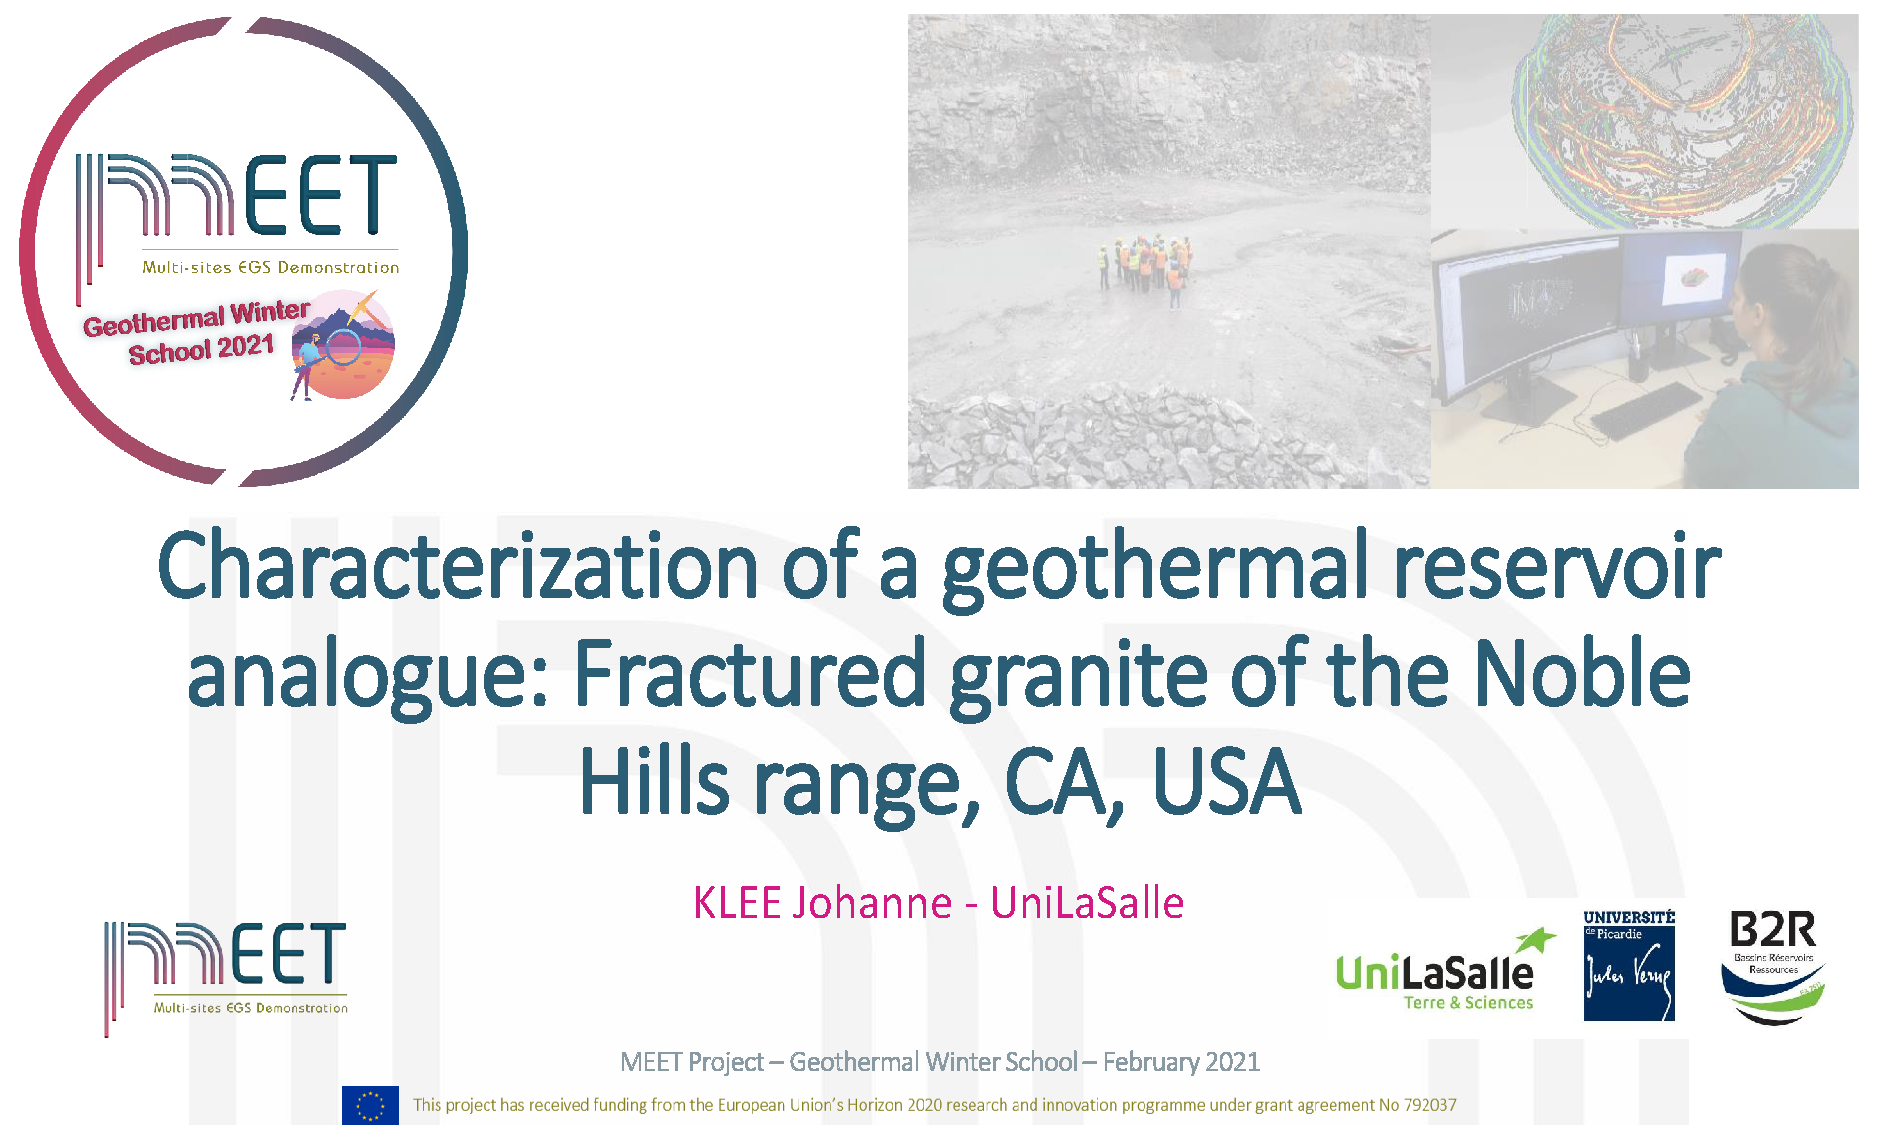 MEET Geothermal Winter School Johanne Klee first slide visual